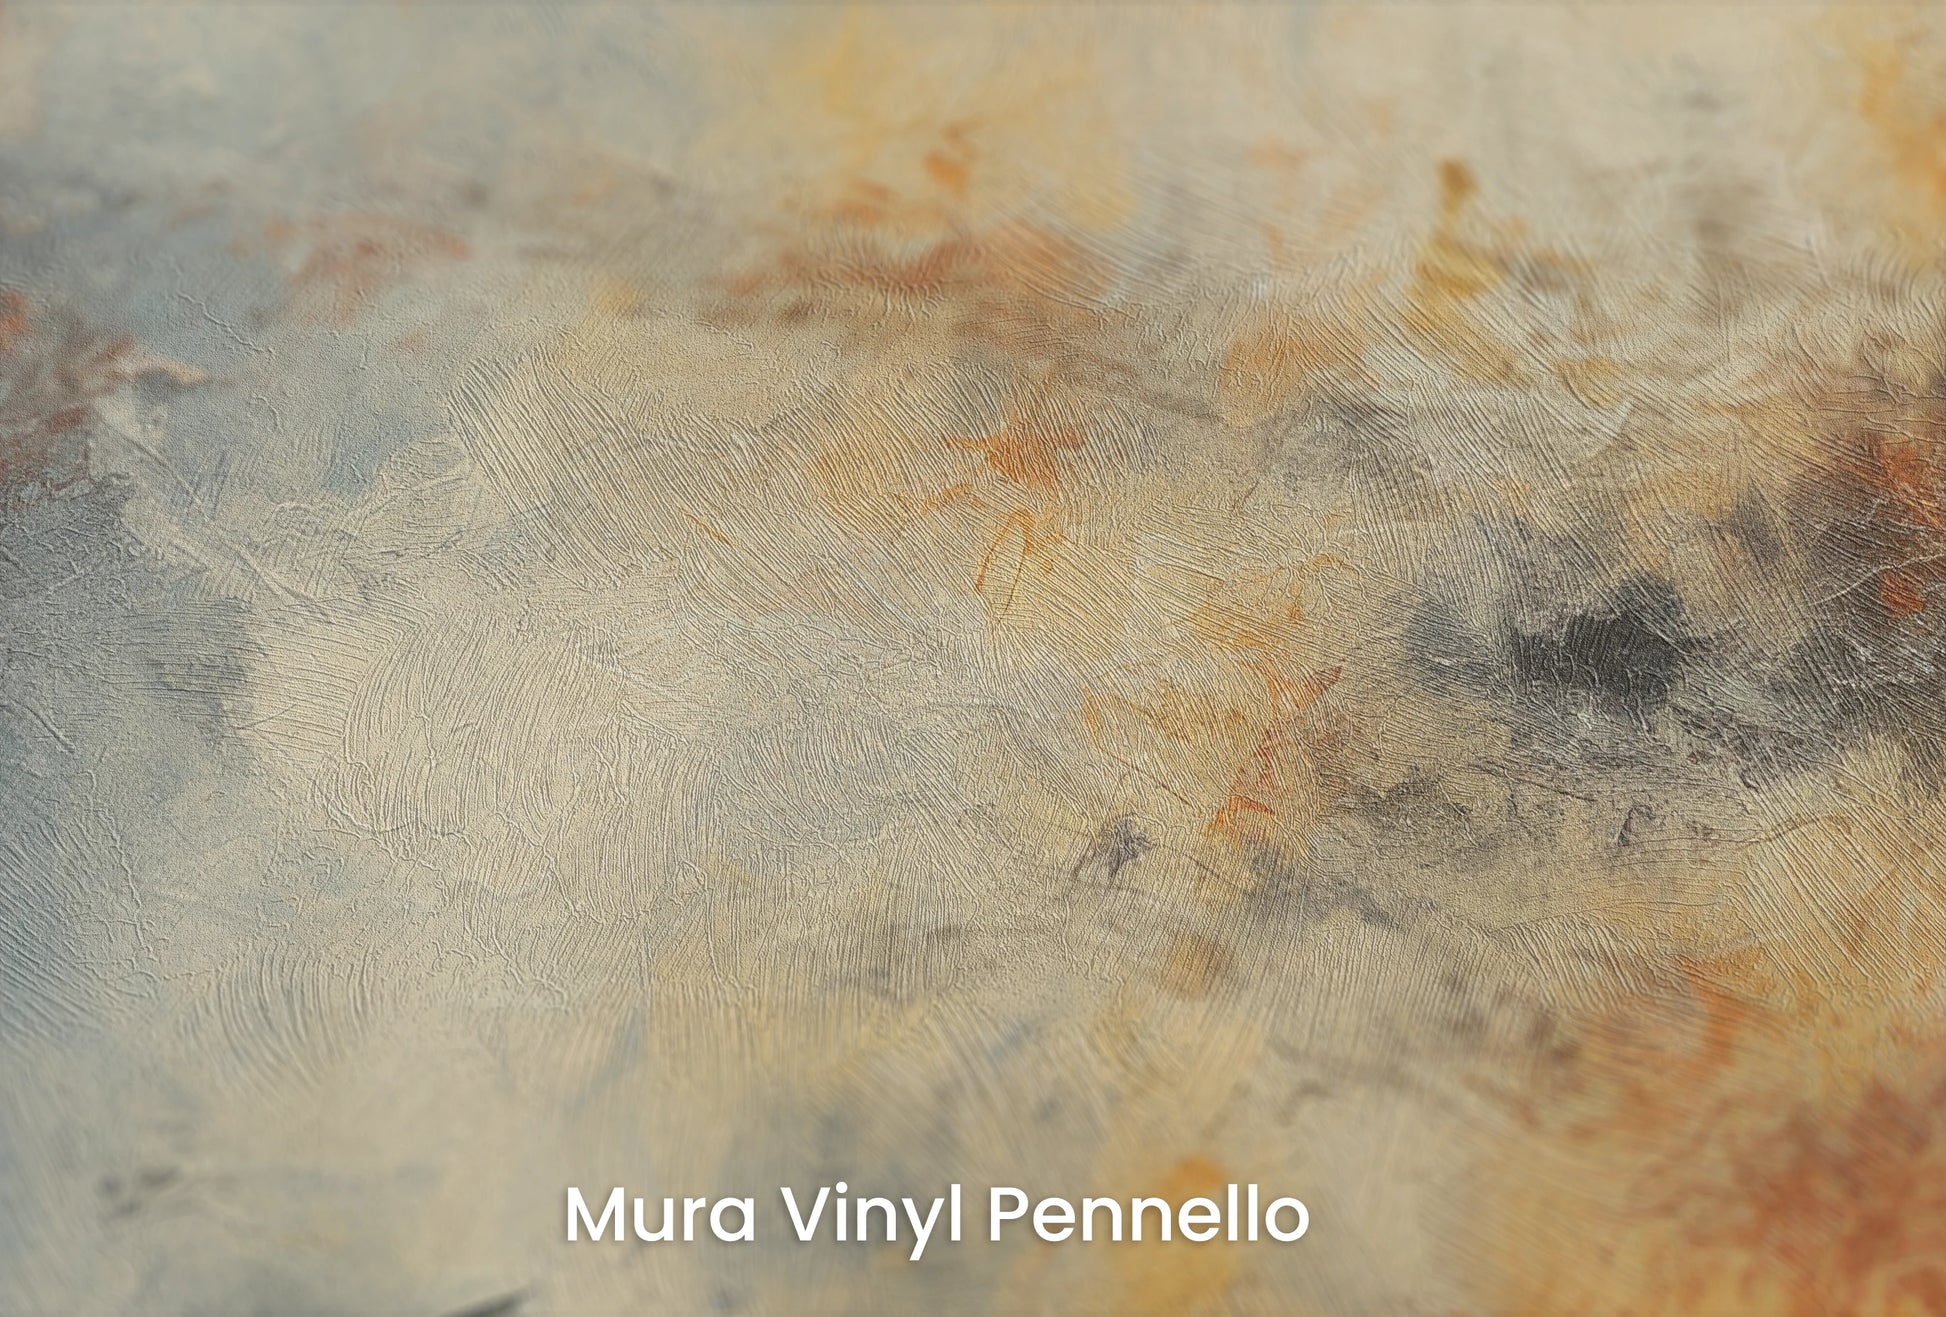 Zbliżenie na artystyczną fototapetę o nazwie Lunar Solitude na podłożu Mura Vinyl Pennello - faktura pociągnięć pędzla malarskiego.